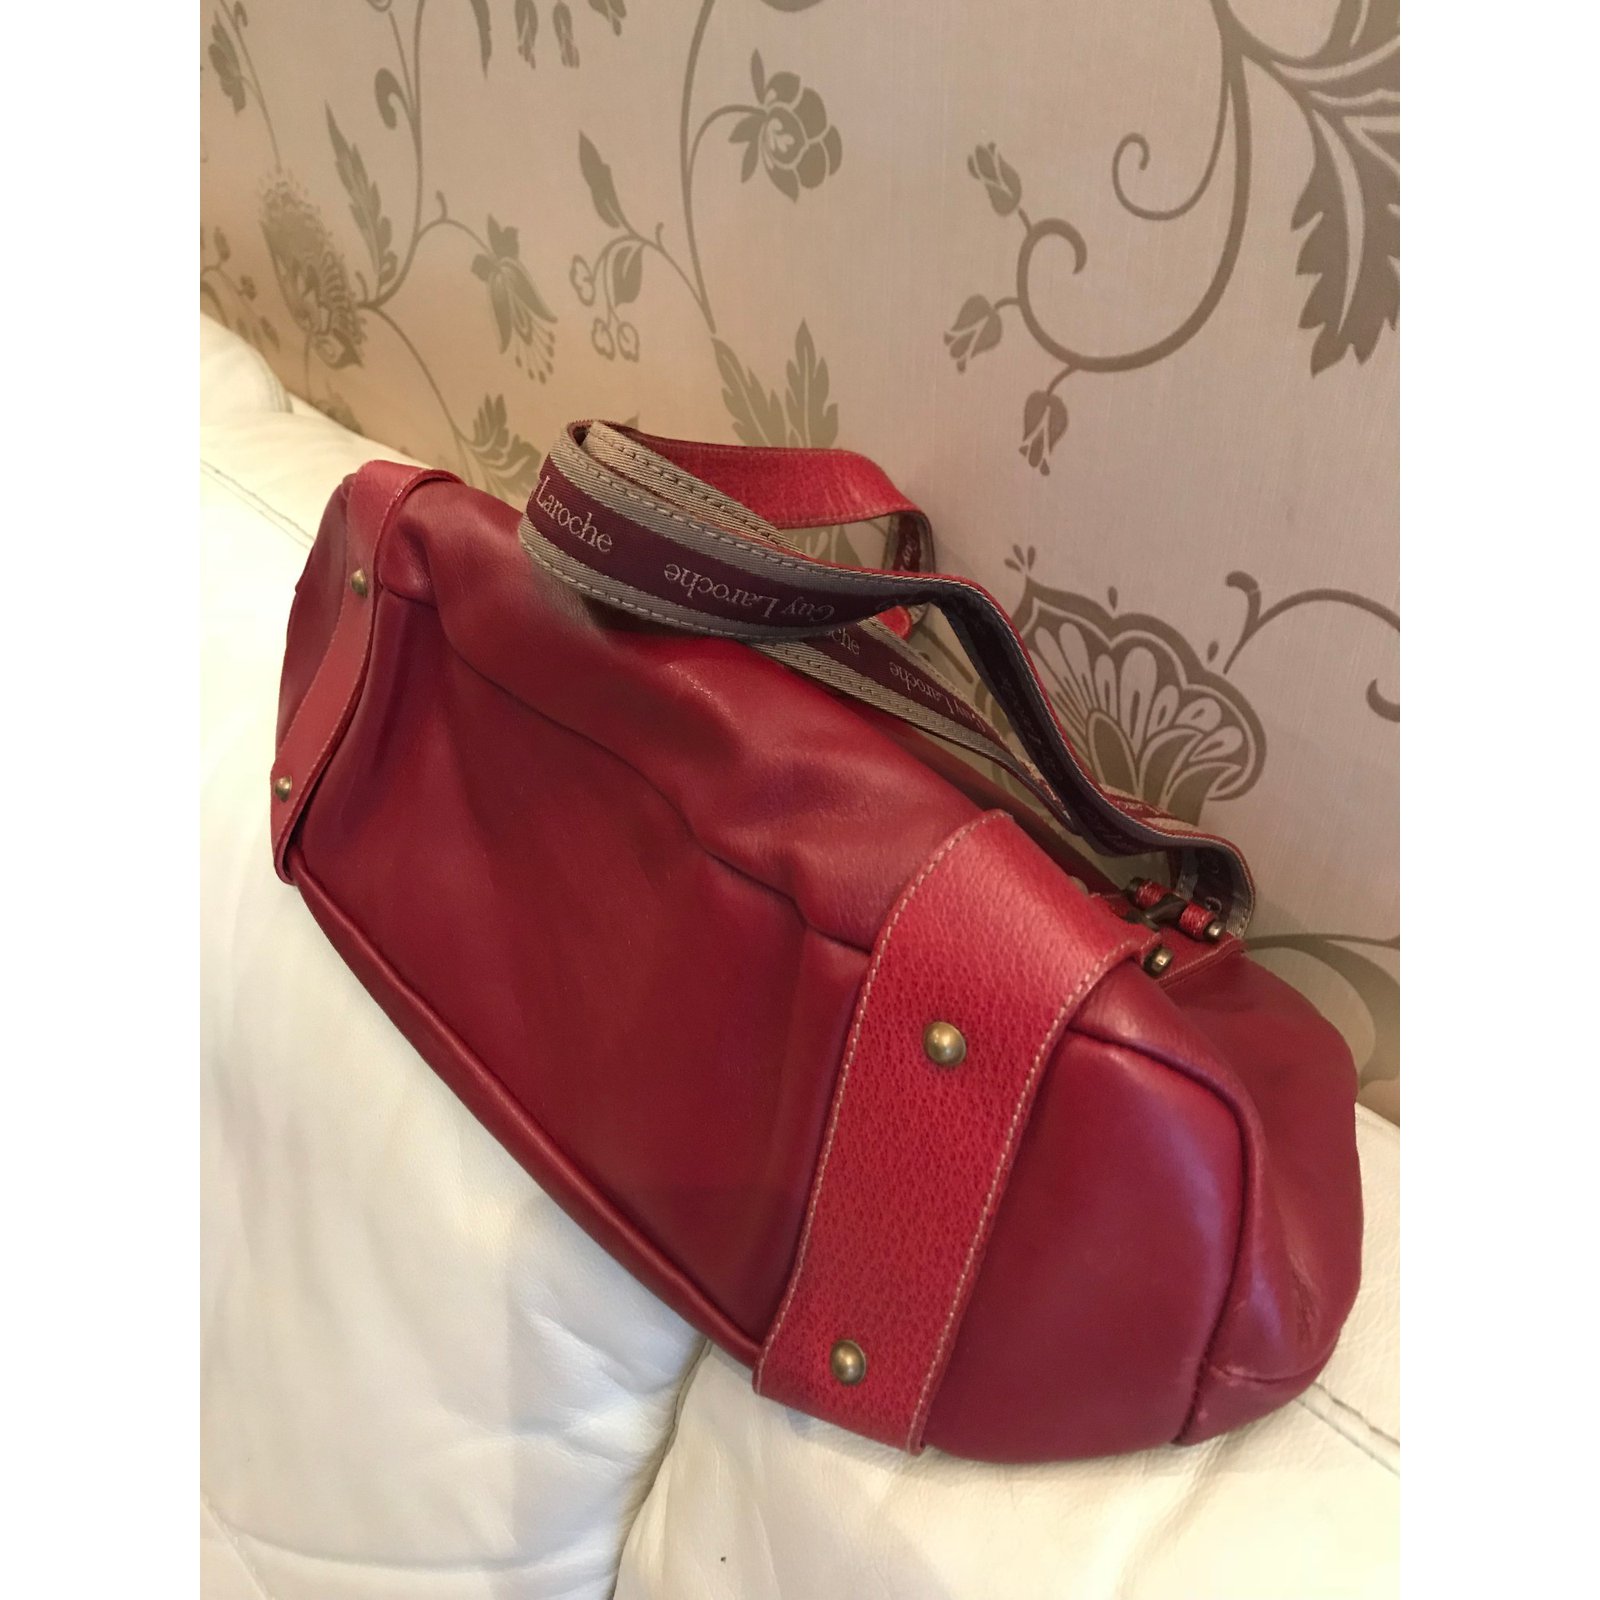 GUY LAROCHE Handbags Guy Laroche Cloth For Female for Women